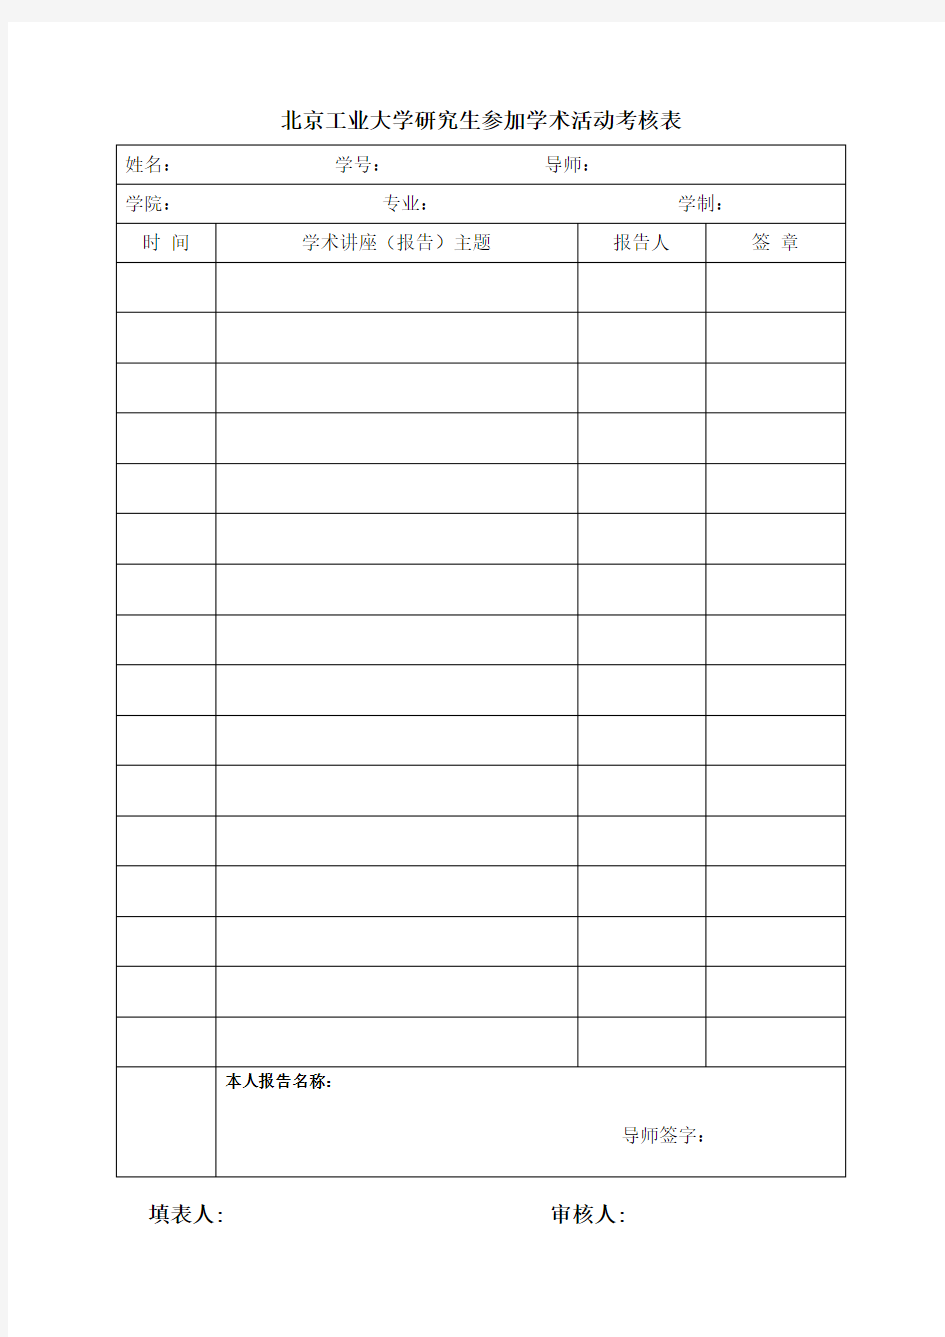 北京工业大学研究生参加学术活动考核表_2012版 (1)